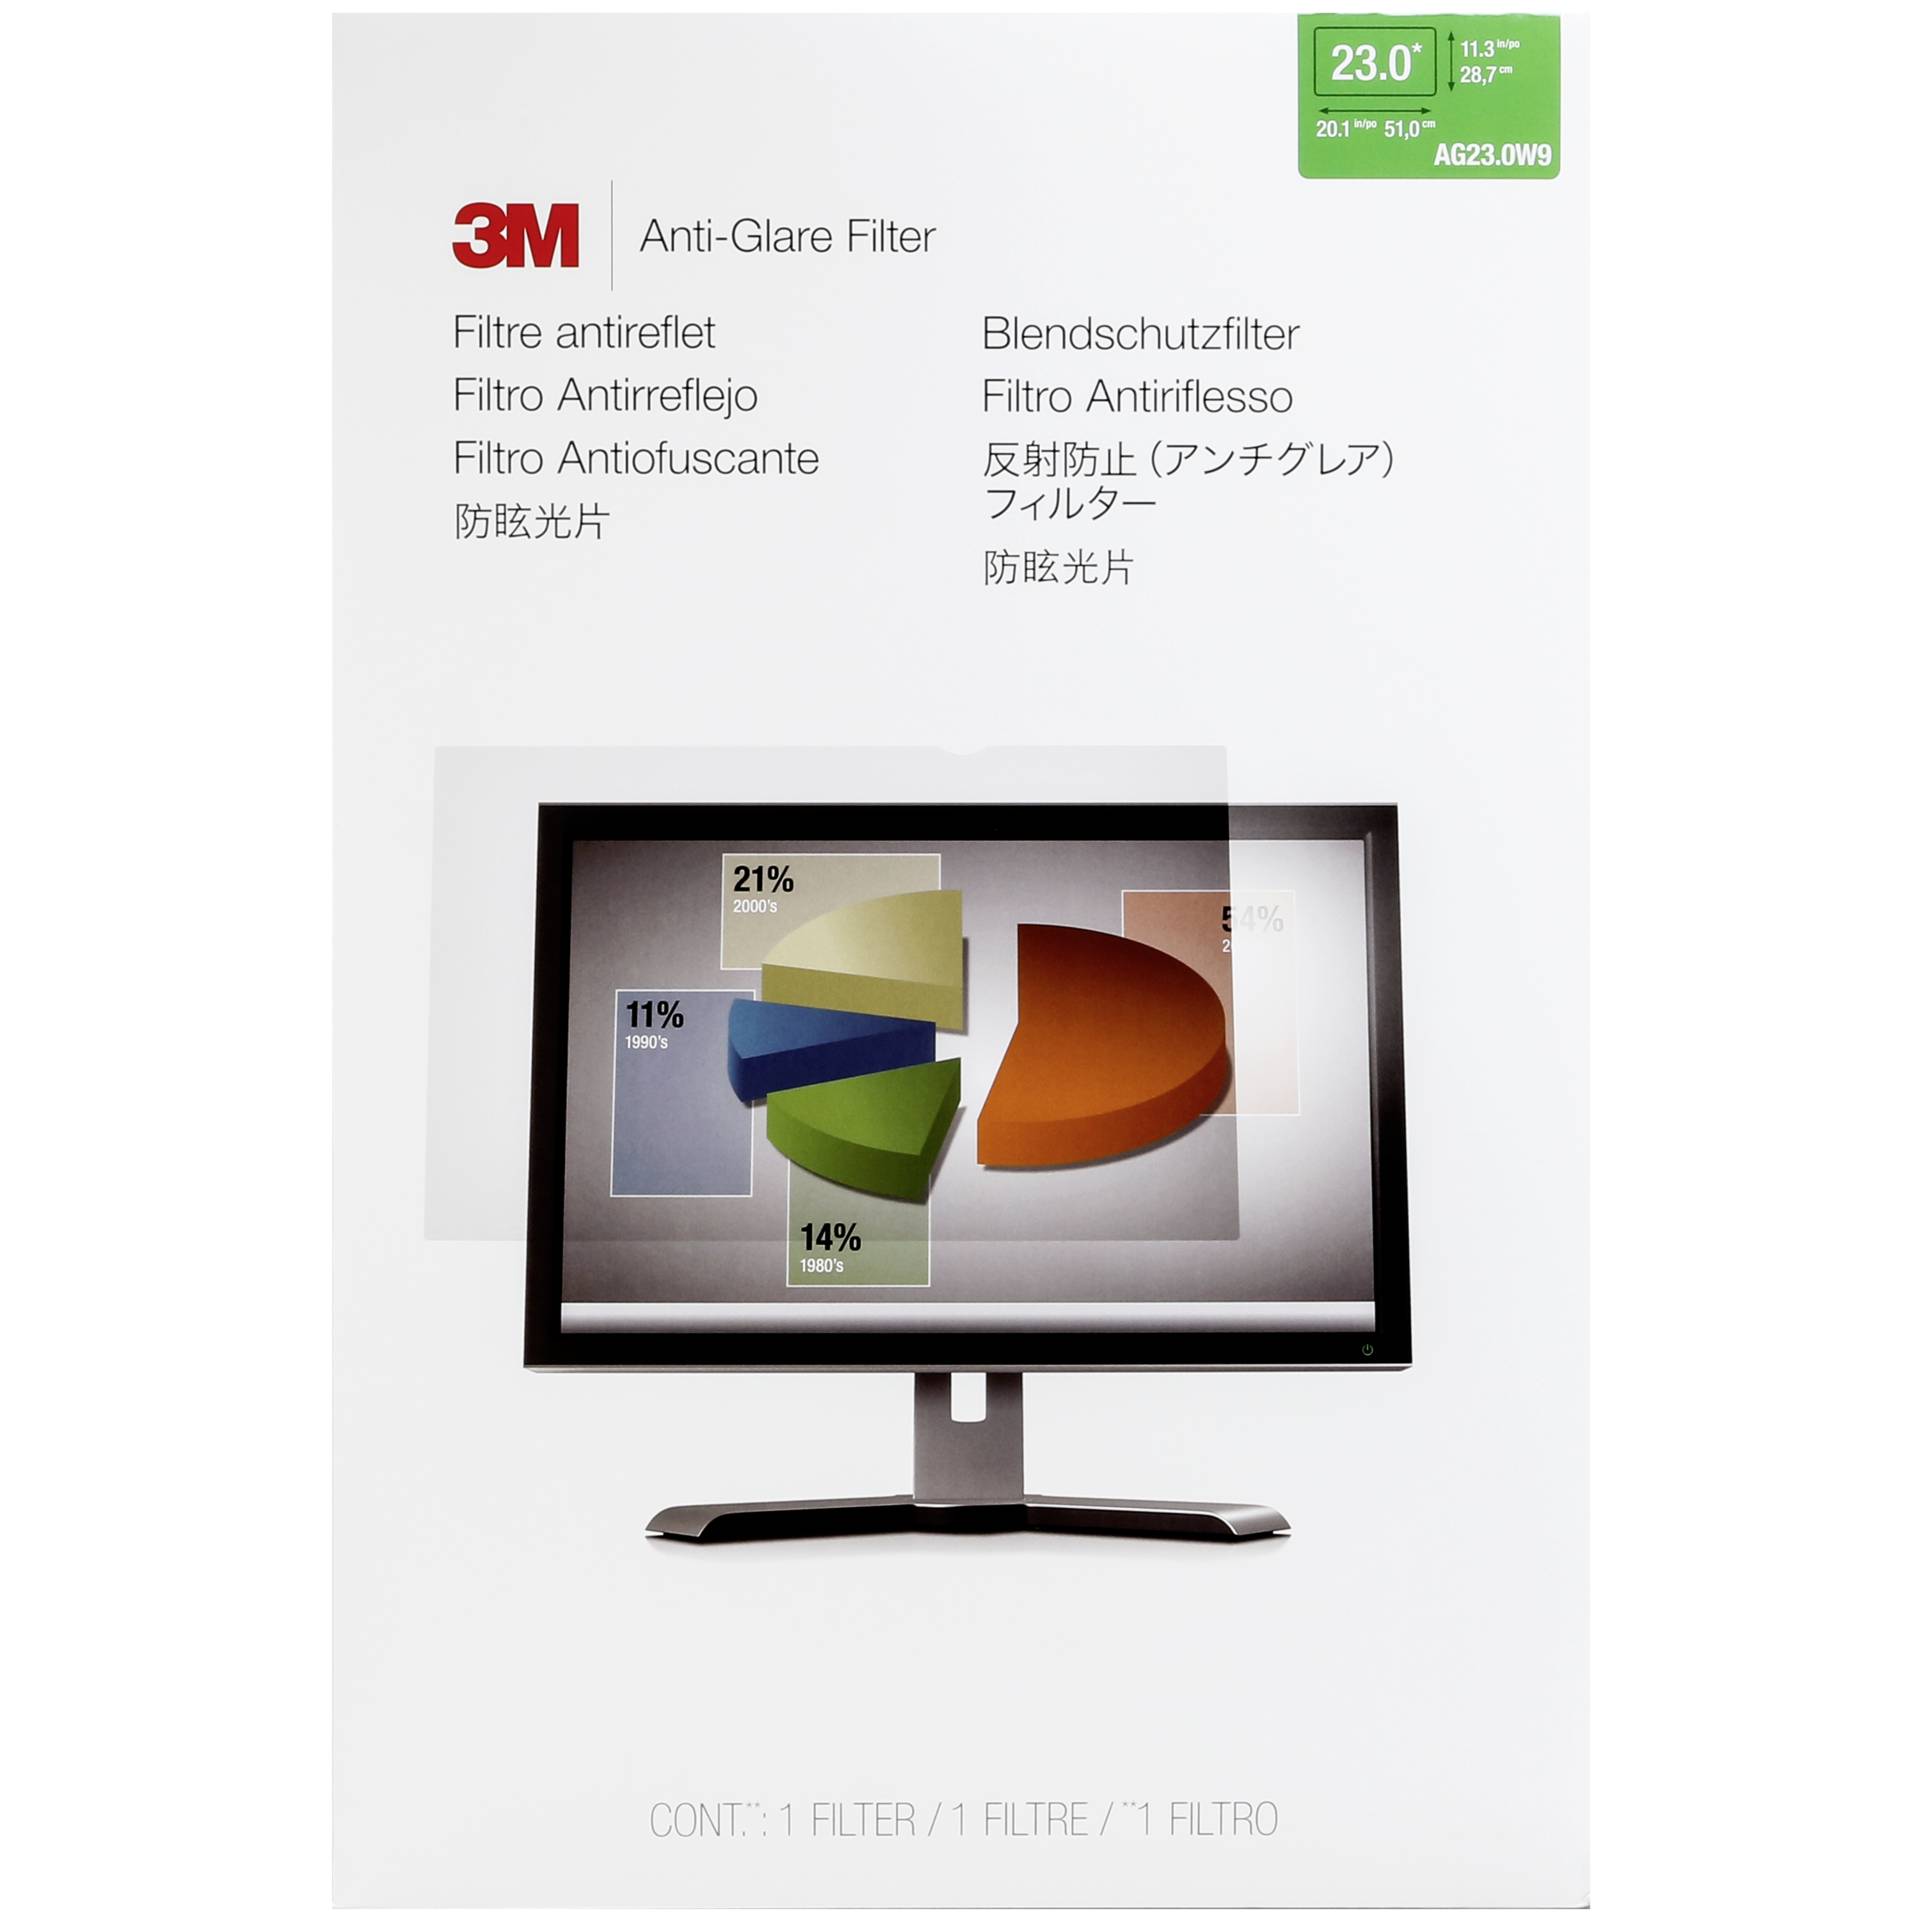 3M AG230W9 Filtro antiriflesso per Widescreen Monitore 23